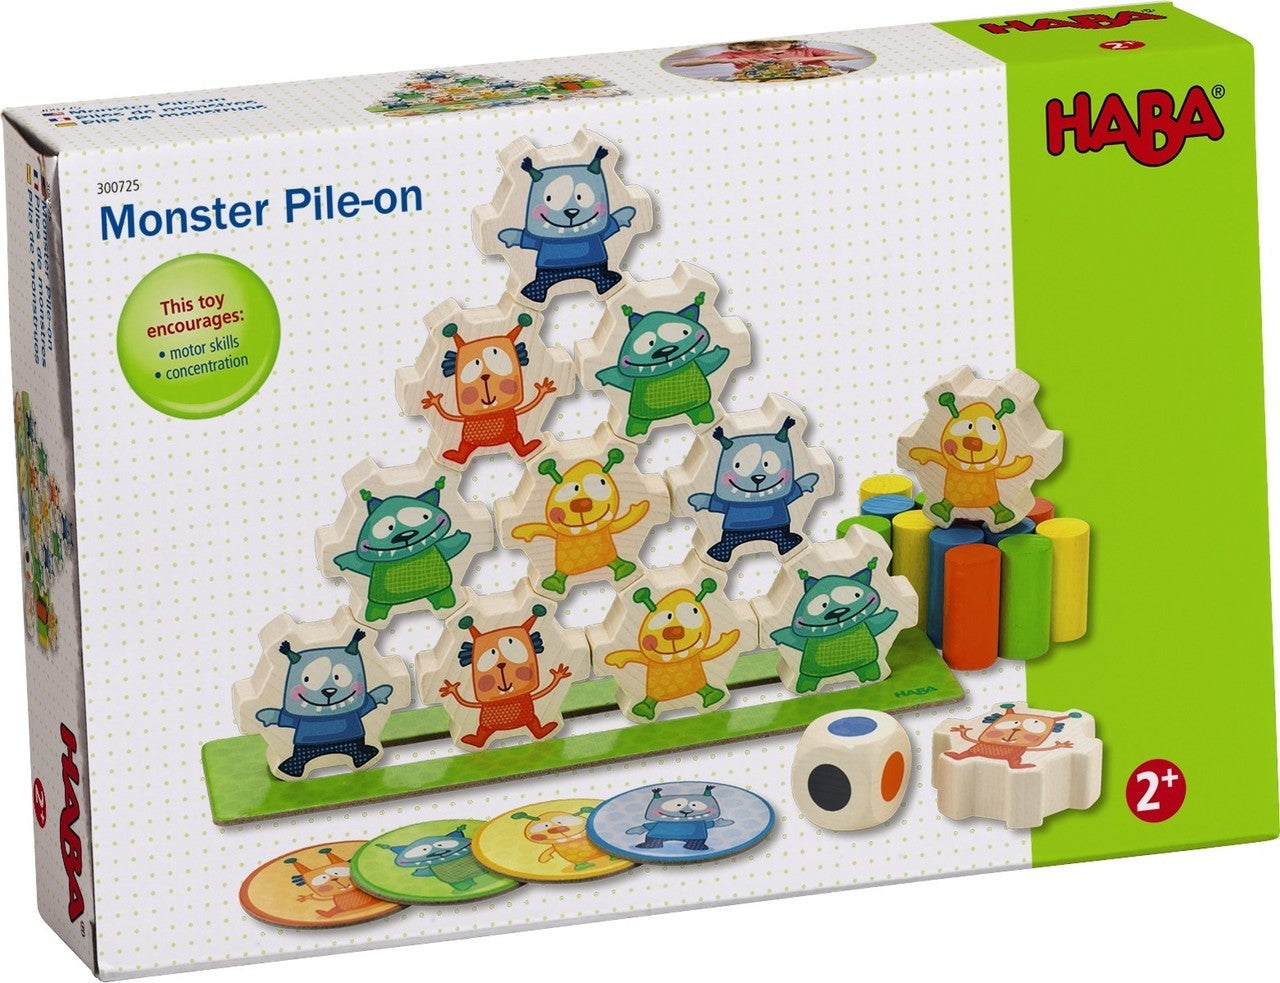 Monster Pile-On - JKA Toys